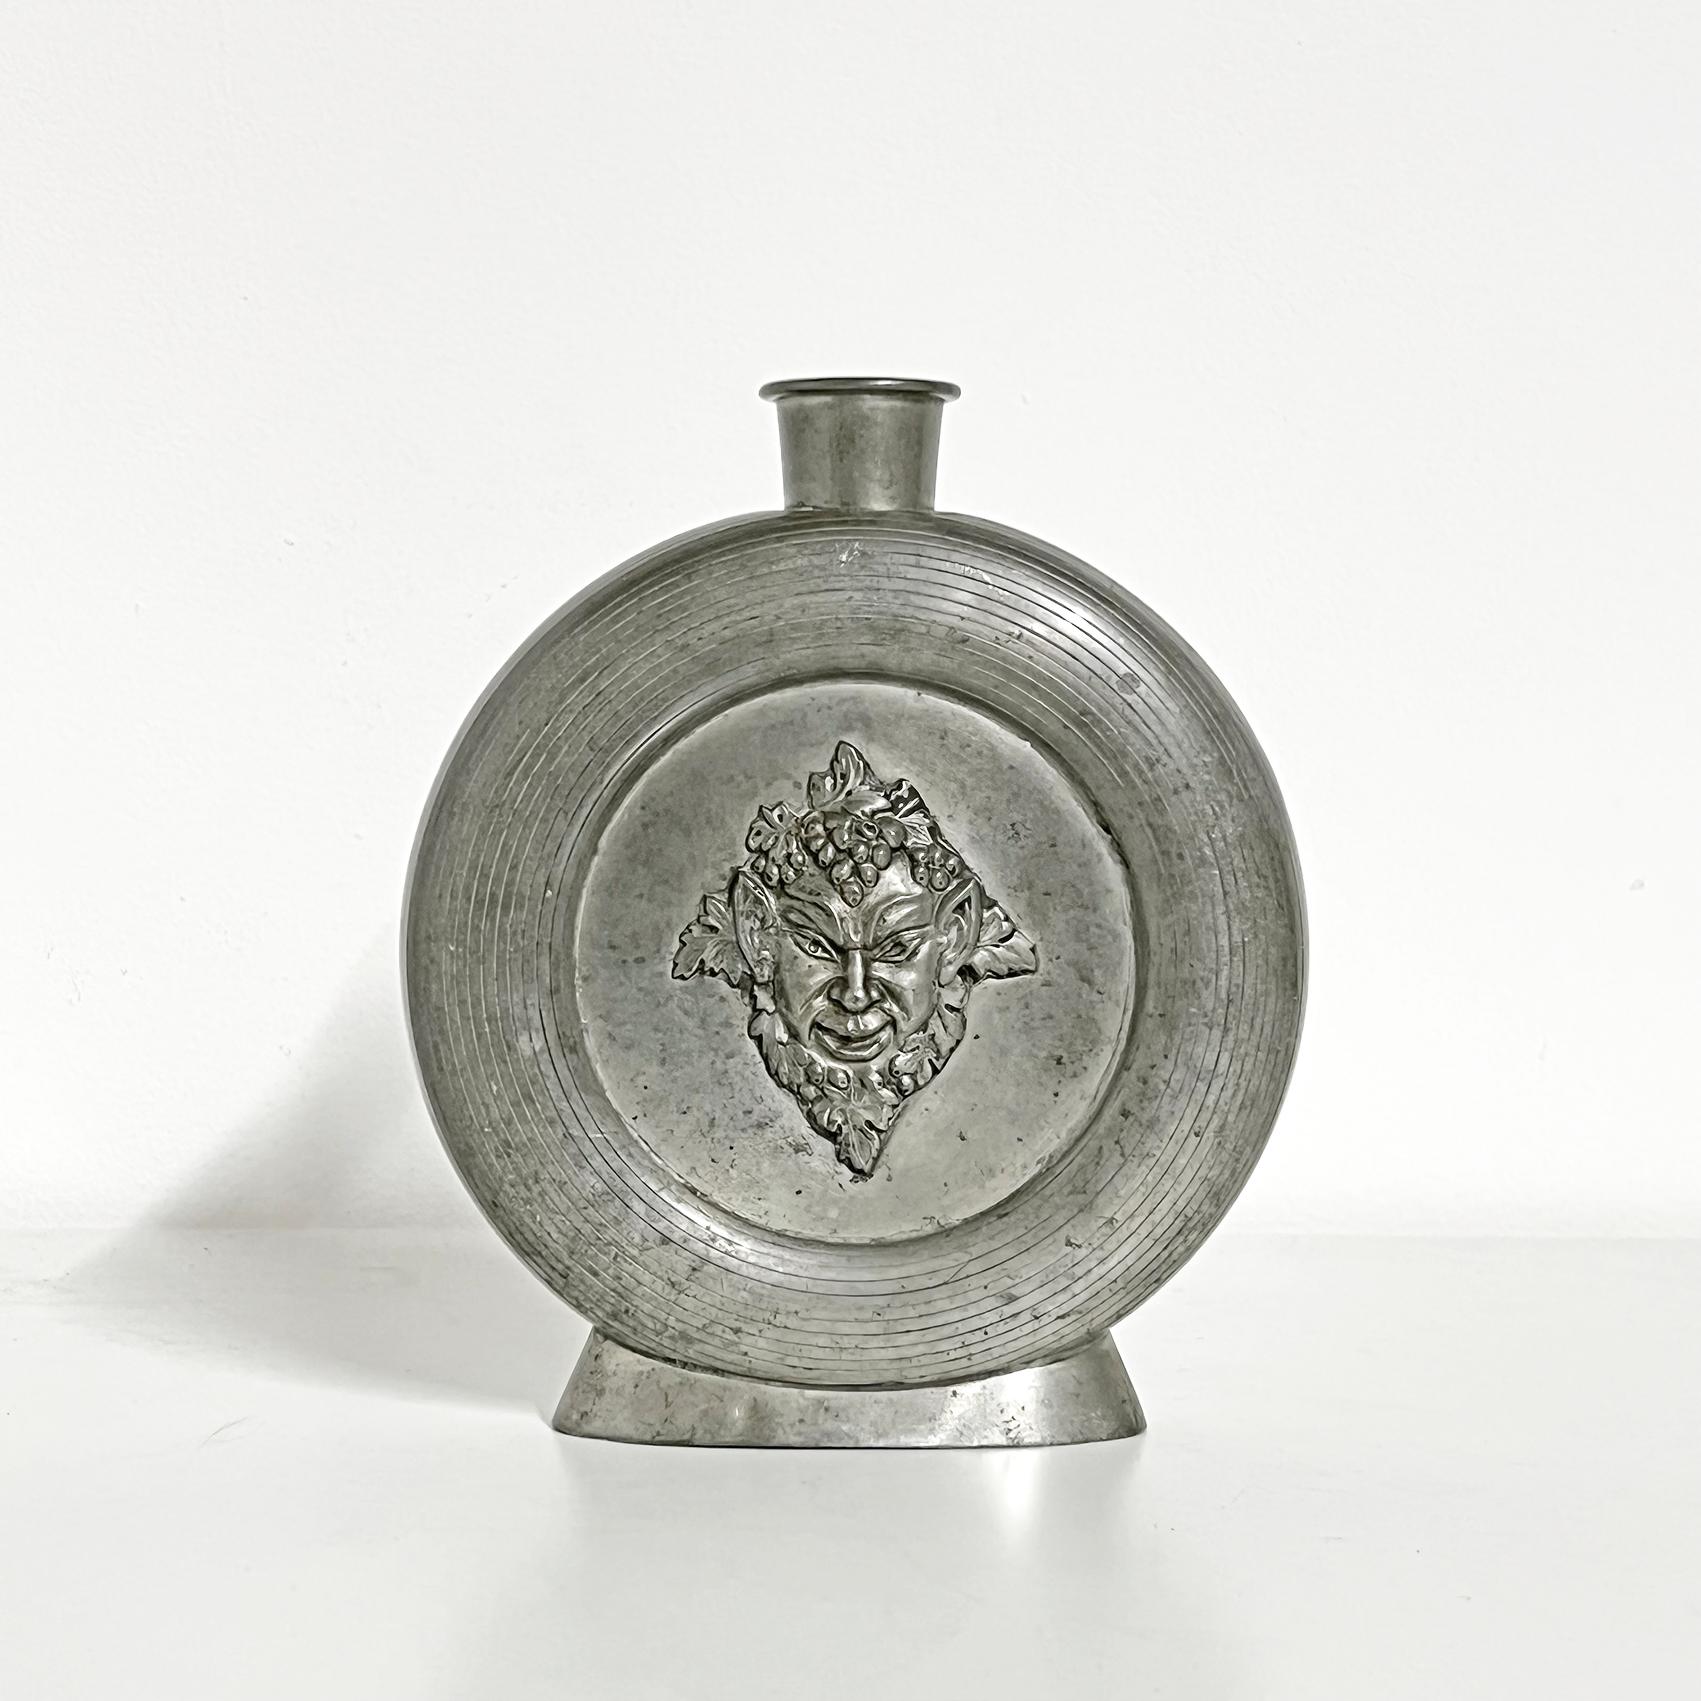 Kühle und seltene skandinavische moderne Flasche in Zinn, die Bacchus darstellt, von CG Hallberg -1934. 
Der Flaschenstopfen fehlt. Gravur, wie auf den Bildern zu sehen.
Signiert mit Herstellermarke darunter. 
Guter Vintage-Zustand, Abnutzung und